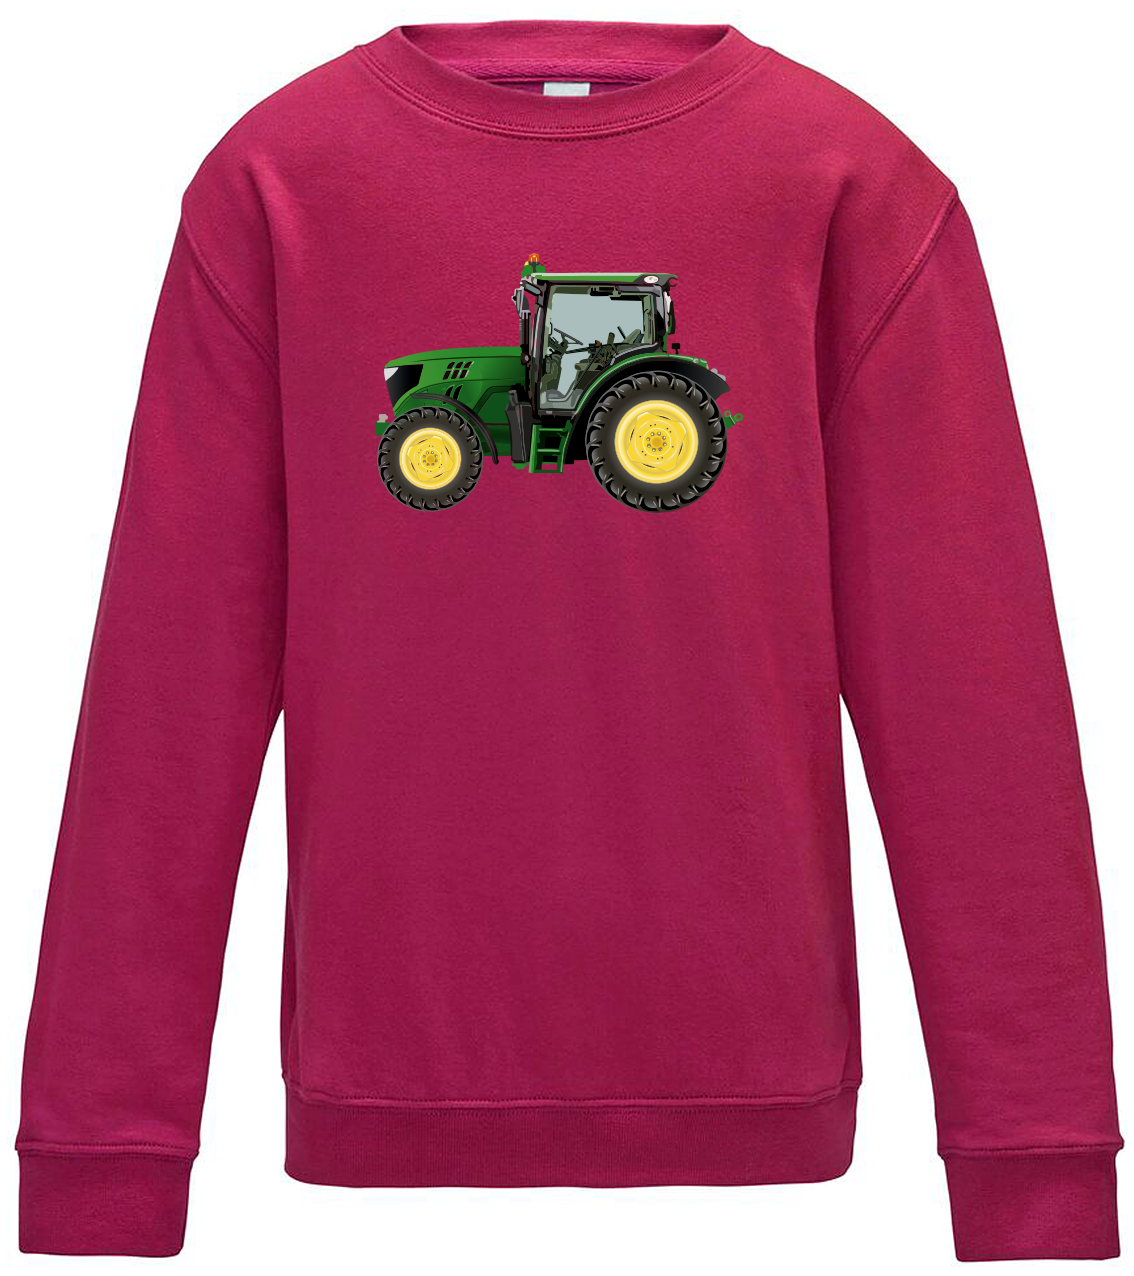 Dětská mikina s traktorem - Zelený traktor Velikost: 12/14 (152/164), Barva: Růžová